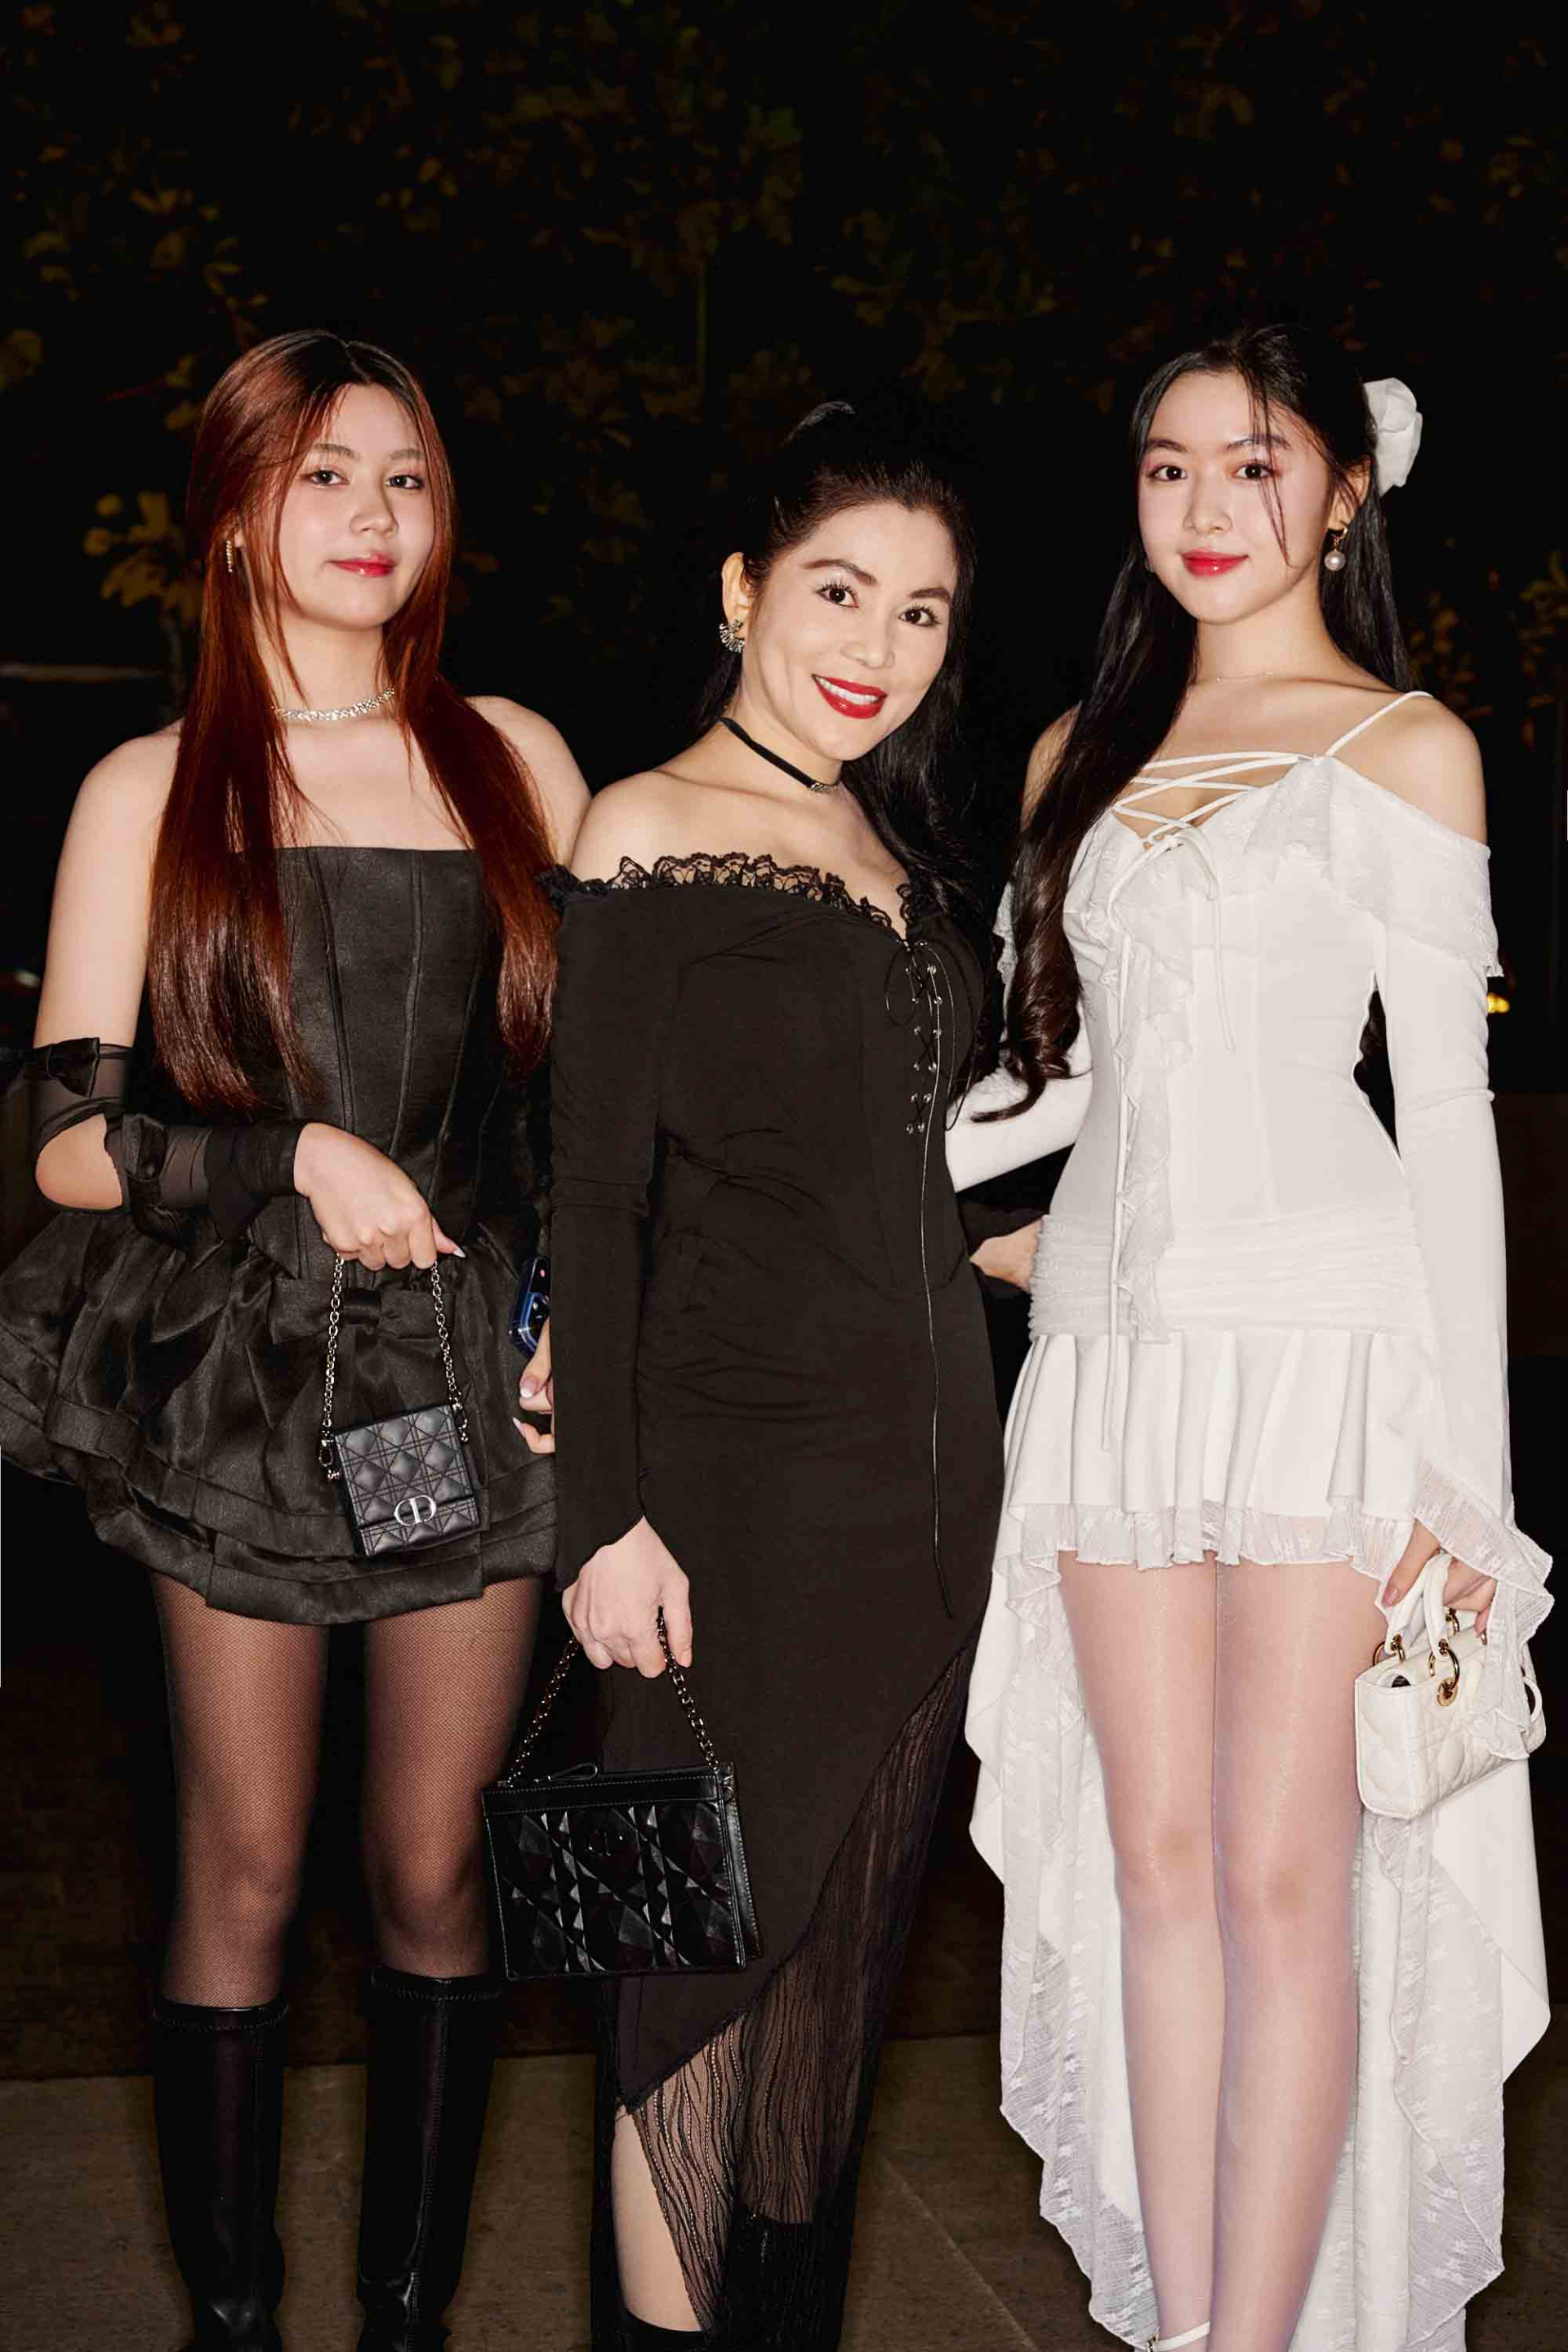 Hai công chúa nhà MC Quyền Linh gây bất ngờ khi xuất hiện cùng mẹ tại thảm đỏ.